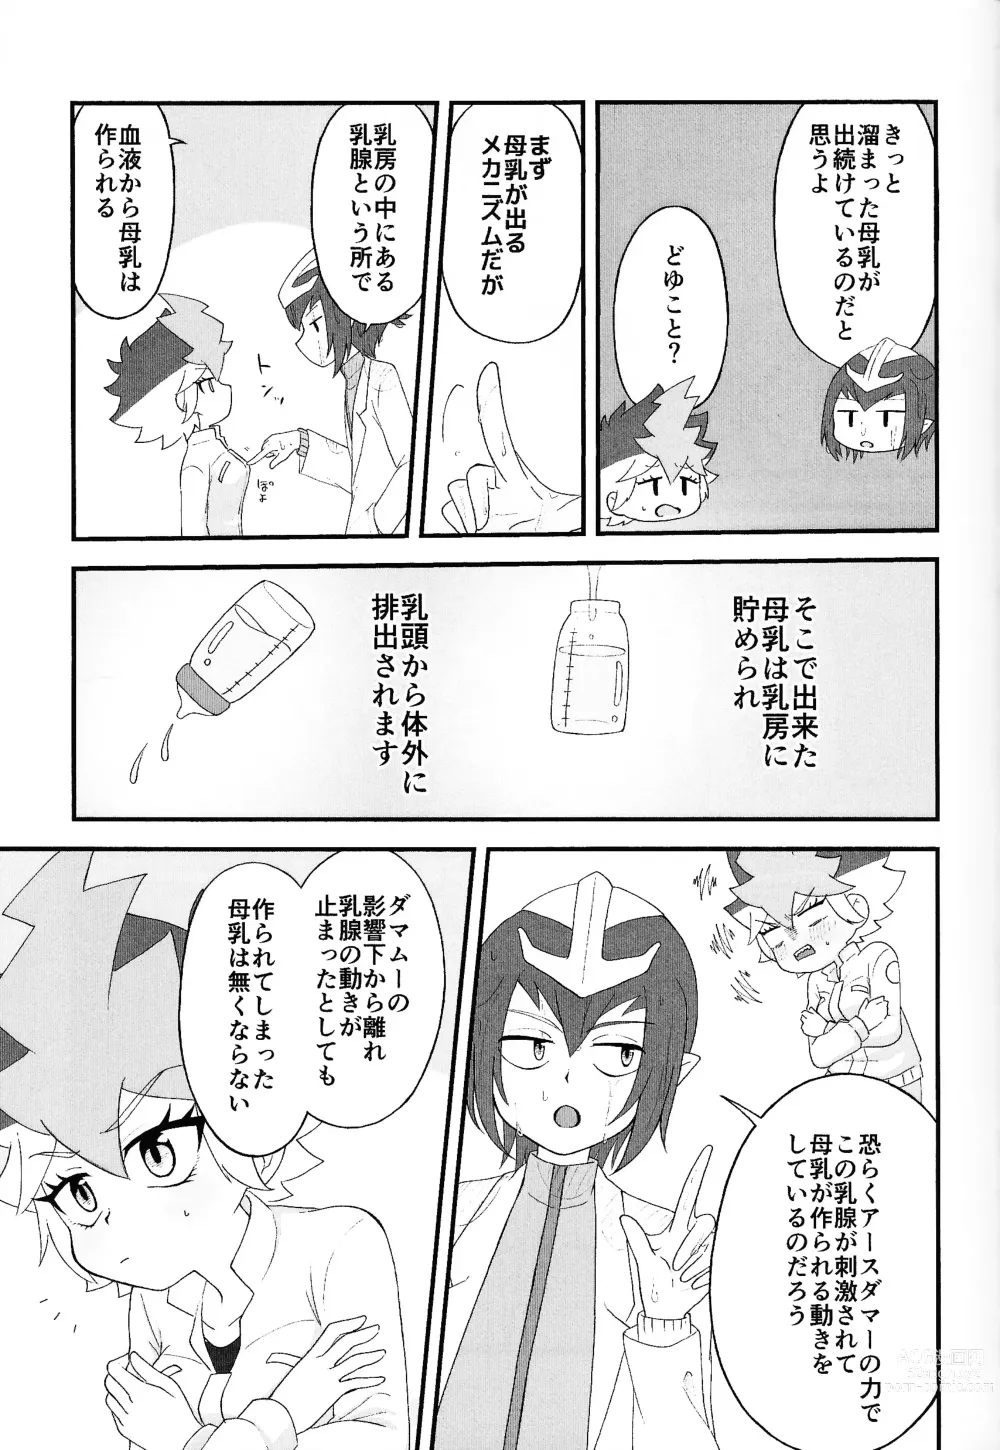 Page 8 of doujinshi Pandoranohako ka kindan no kajitsu ka